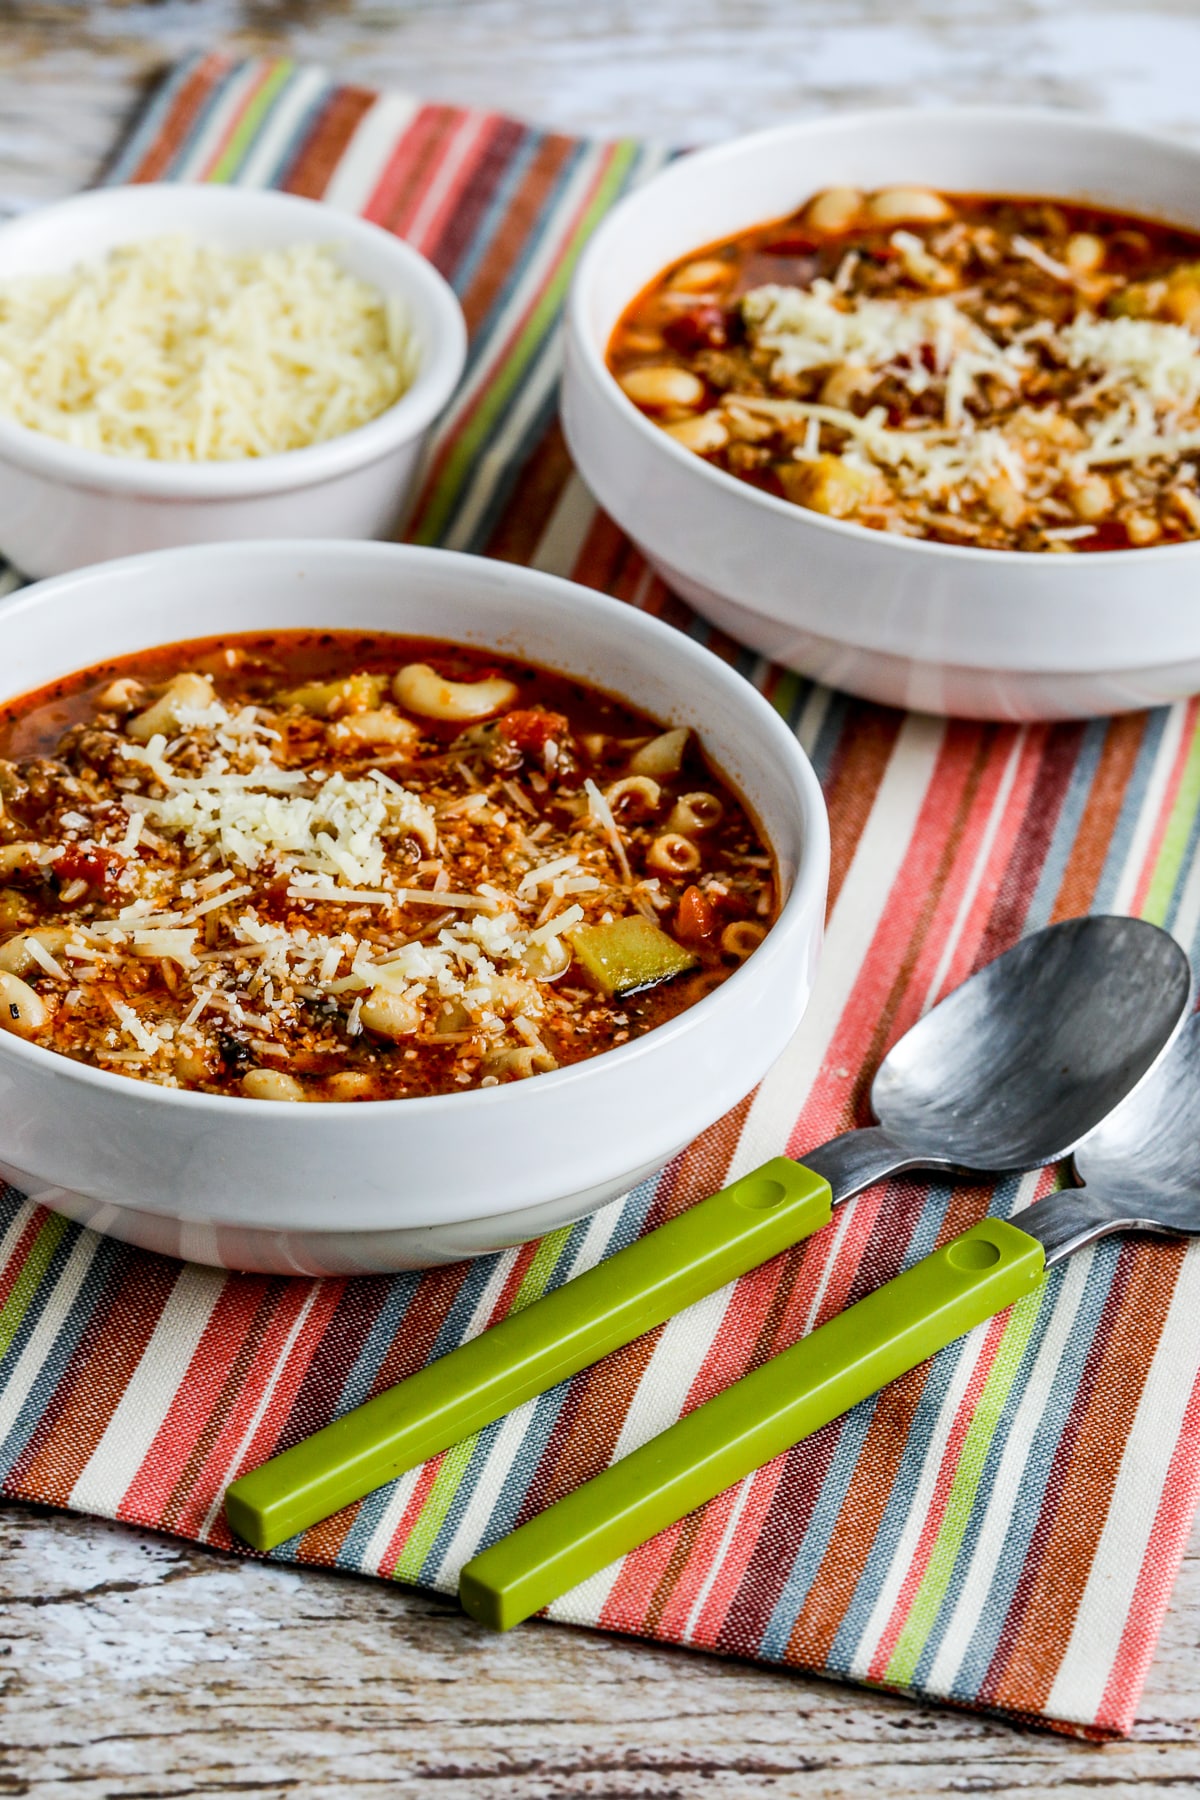 Plus loin en arrière photo de la soupe de saucisses italiennes, de courgettes et de macaronis présentée dans deux bols avec des cuillères et du parmesan